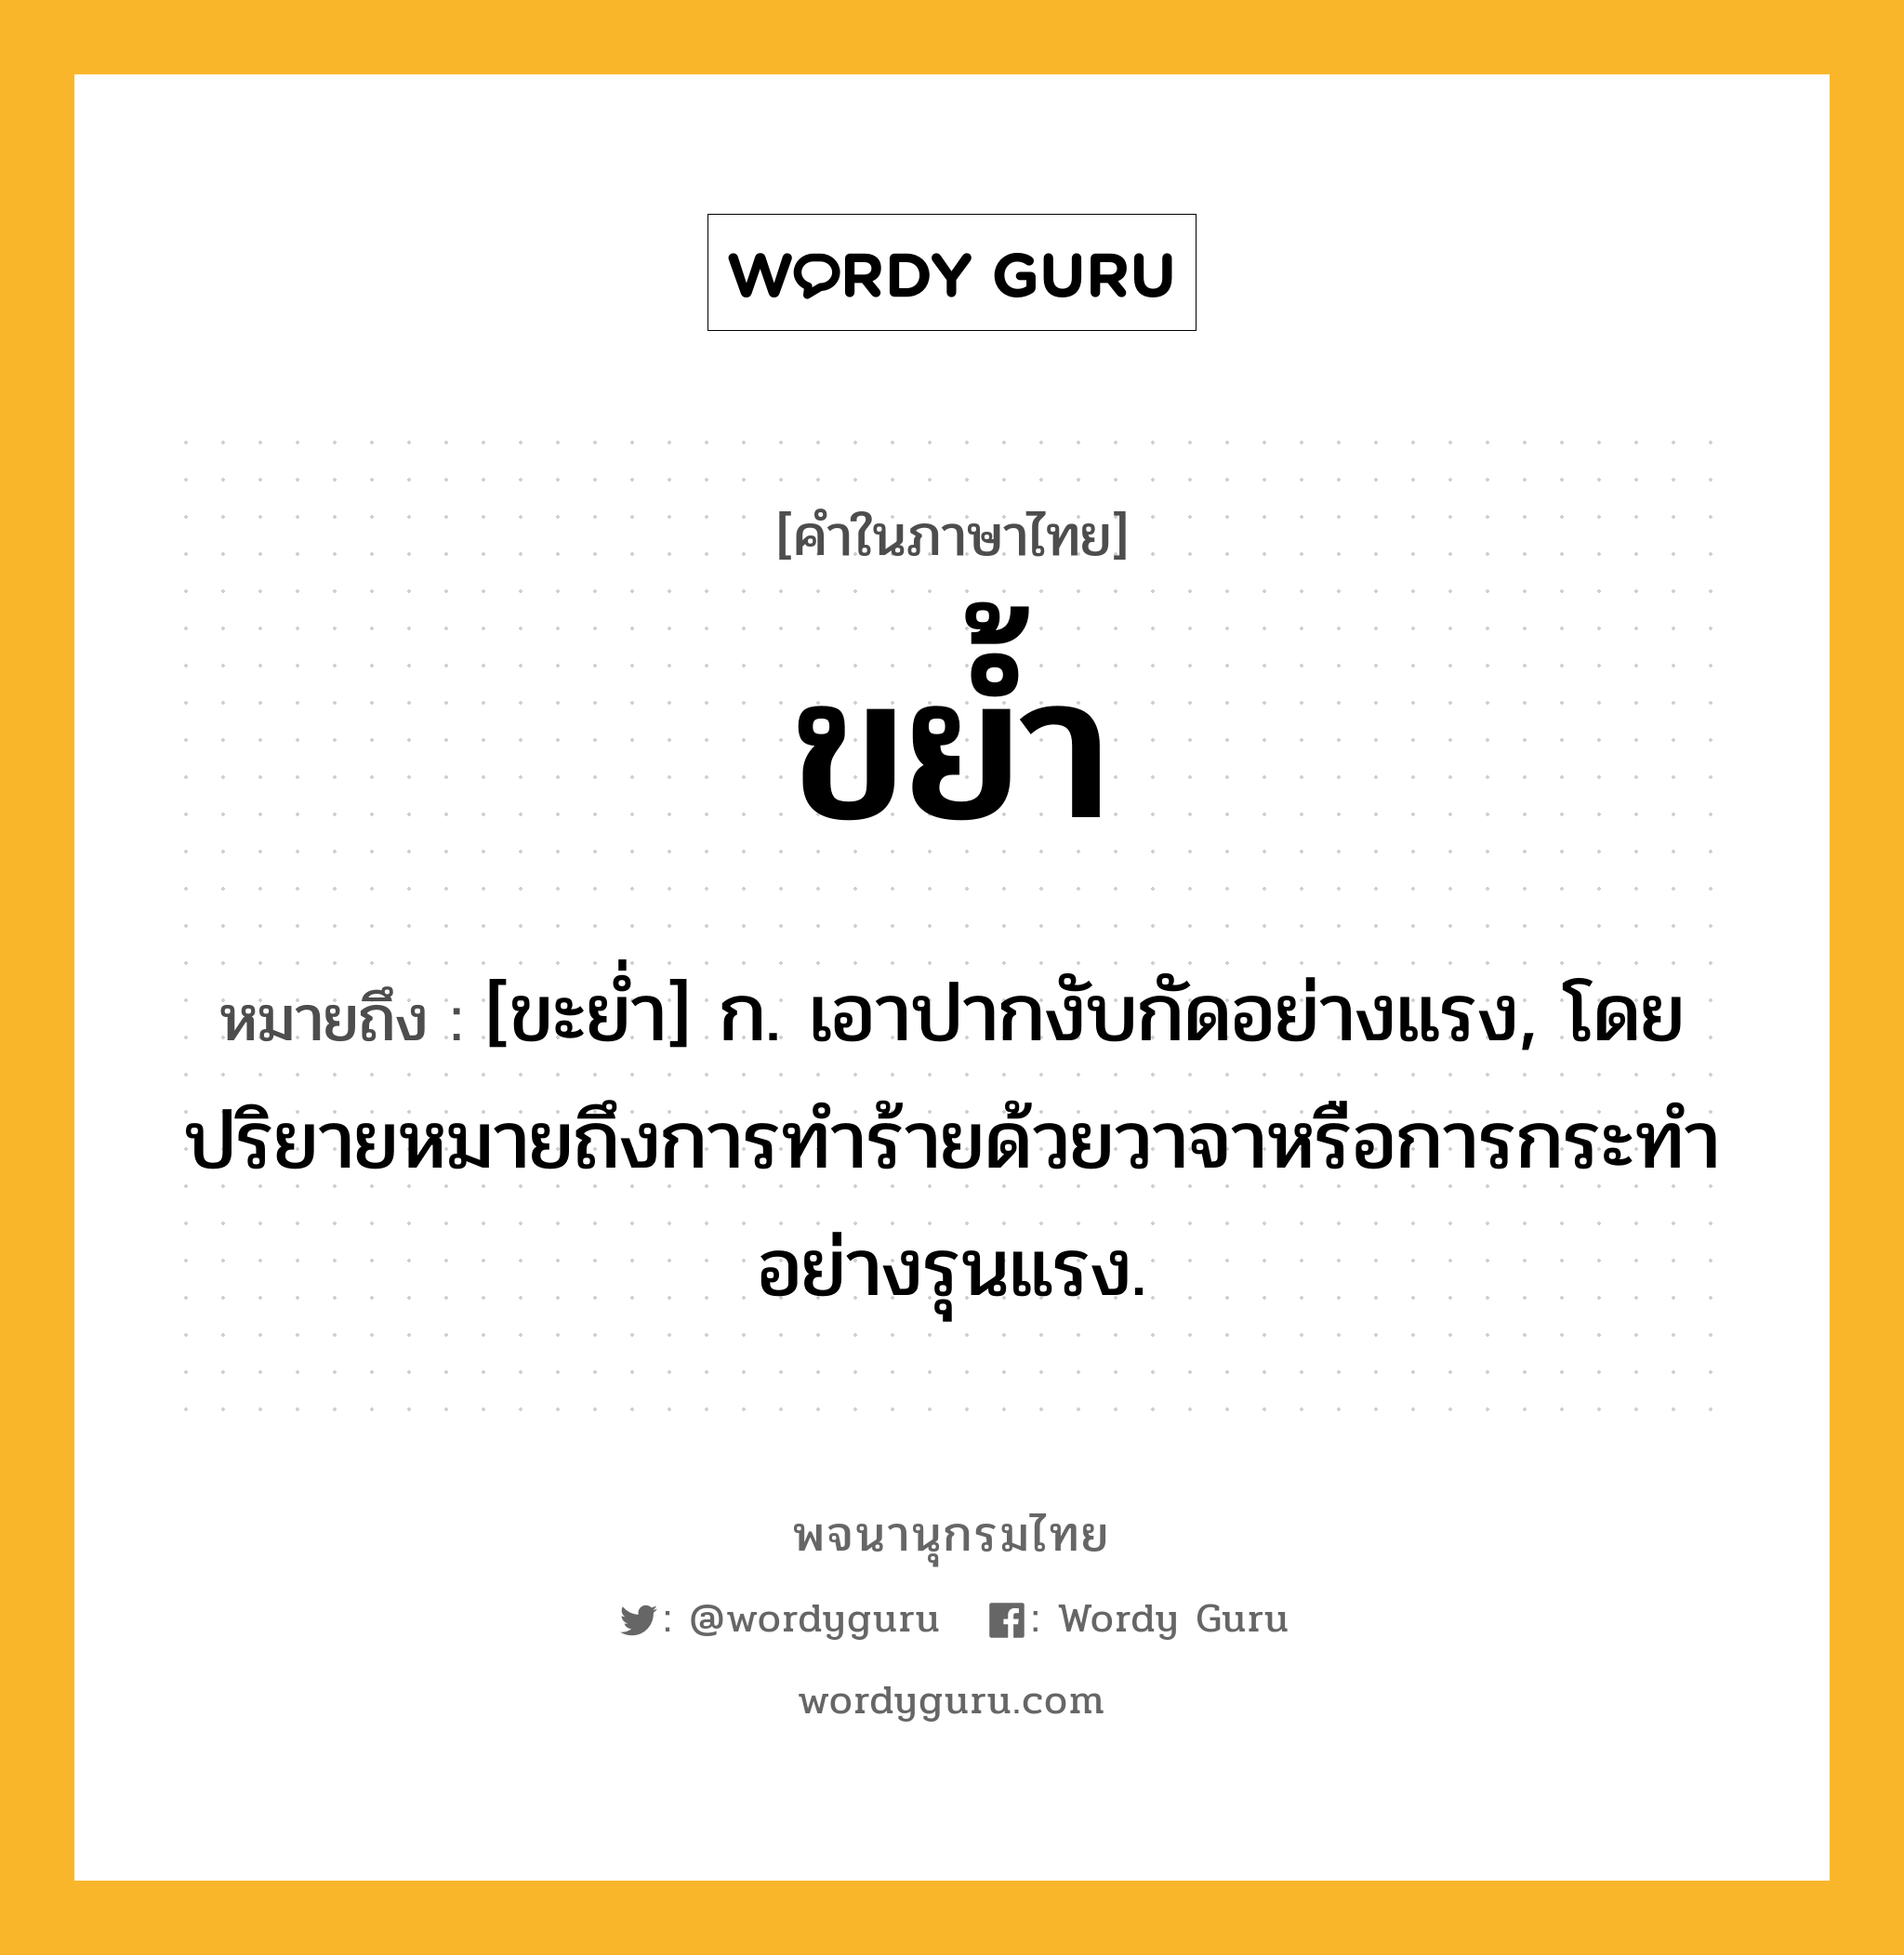 ขย้ำ ความหมาย หมายถึงอะไร?, คำในภาษาไทย ขย้ำ หมายถึง [ขะยํ่า] ก. เอาปากงับกัดอย่างแรง, โดยปริยายหมายถึงการทำร้ายด้วยวาจาหรือการกระทำอย่างรุนแรง.